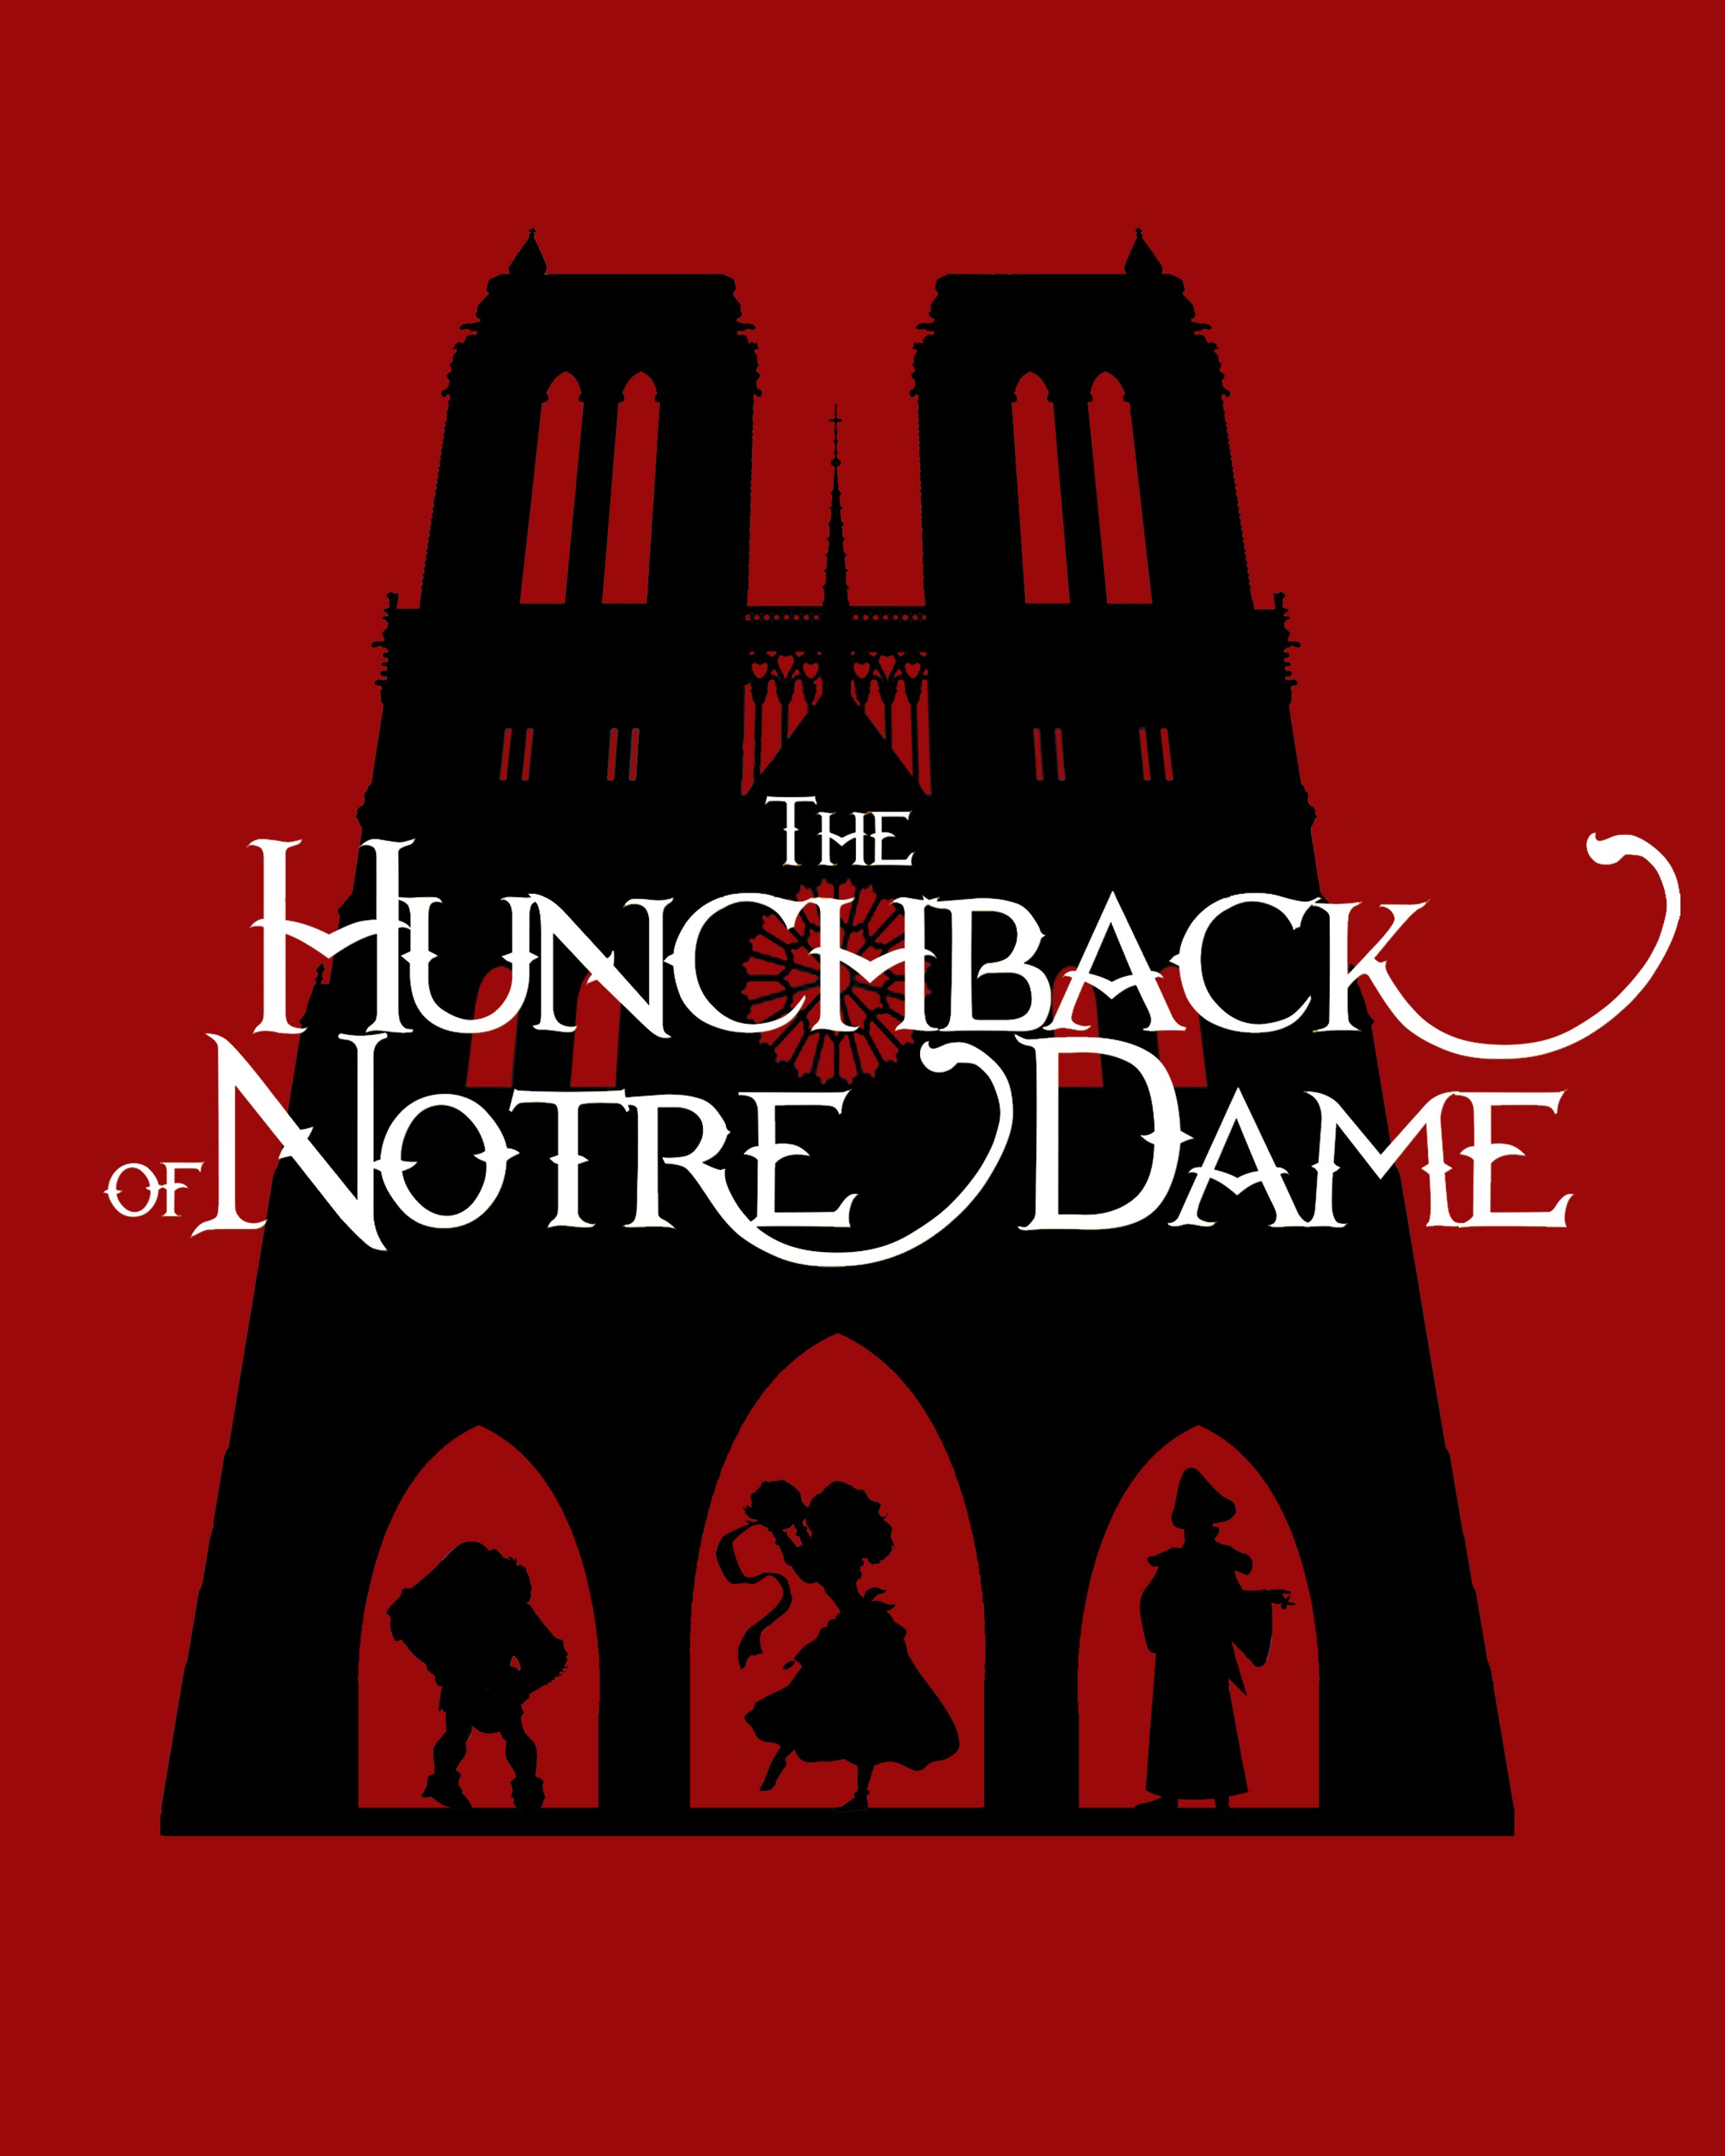 KVTA's The Hunchback of Notre Dame